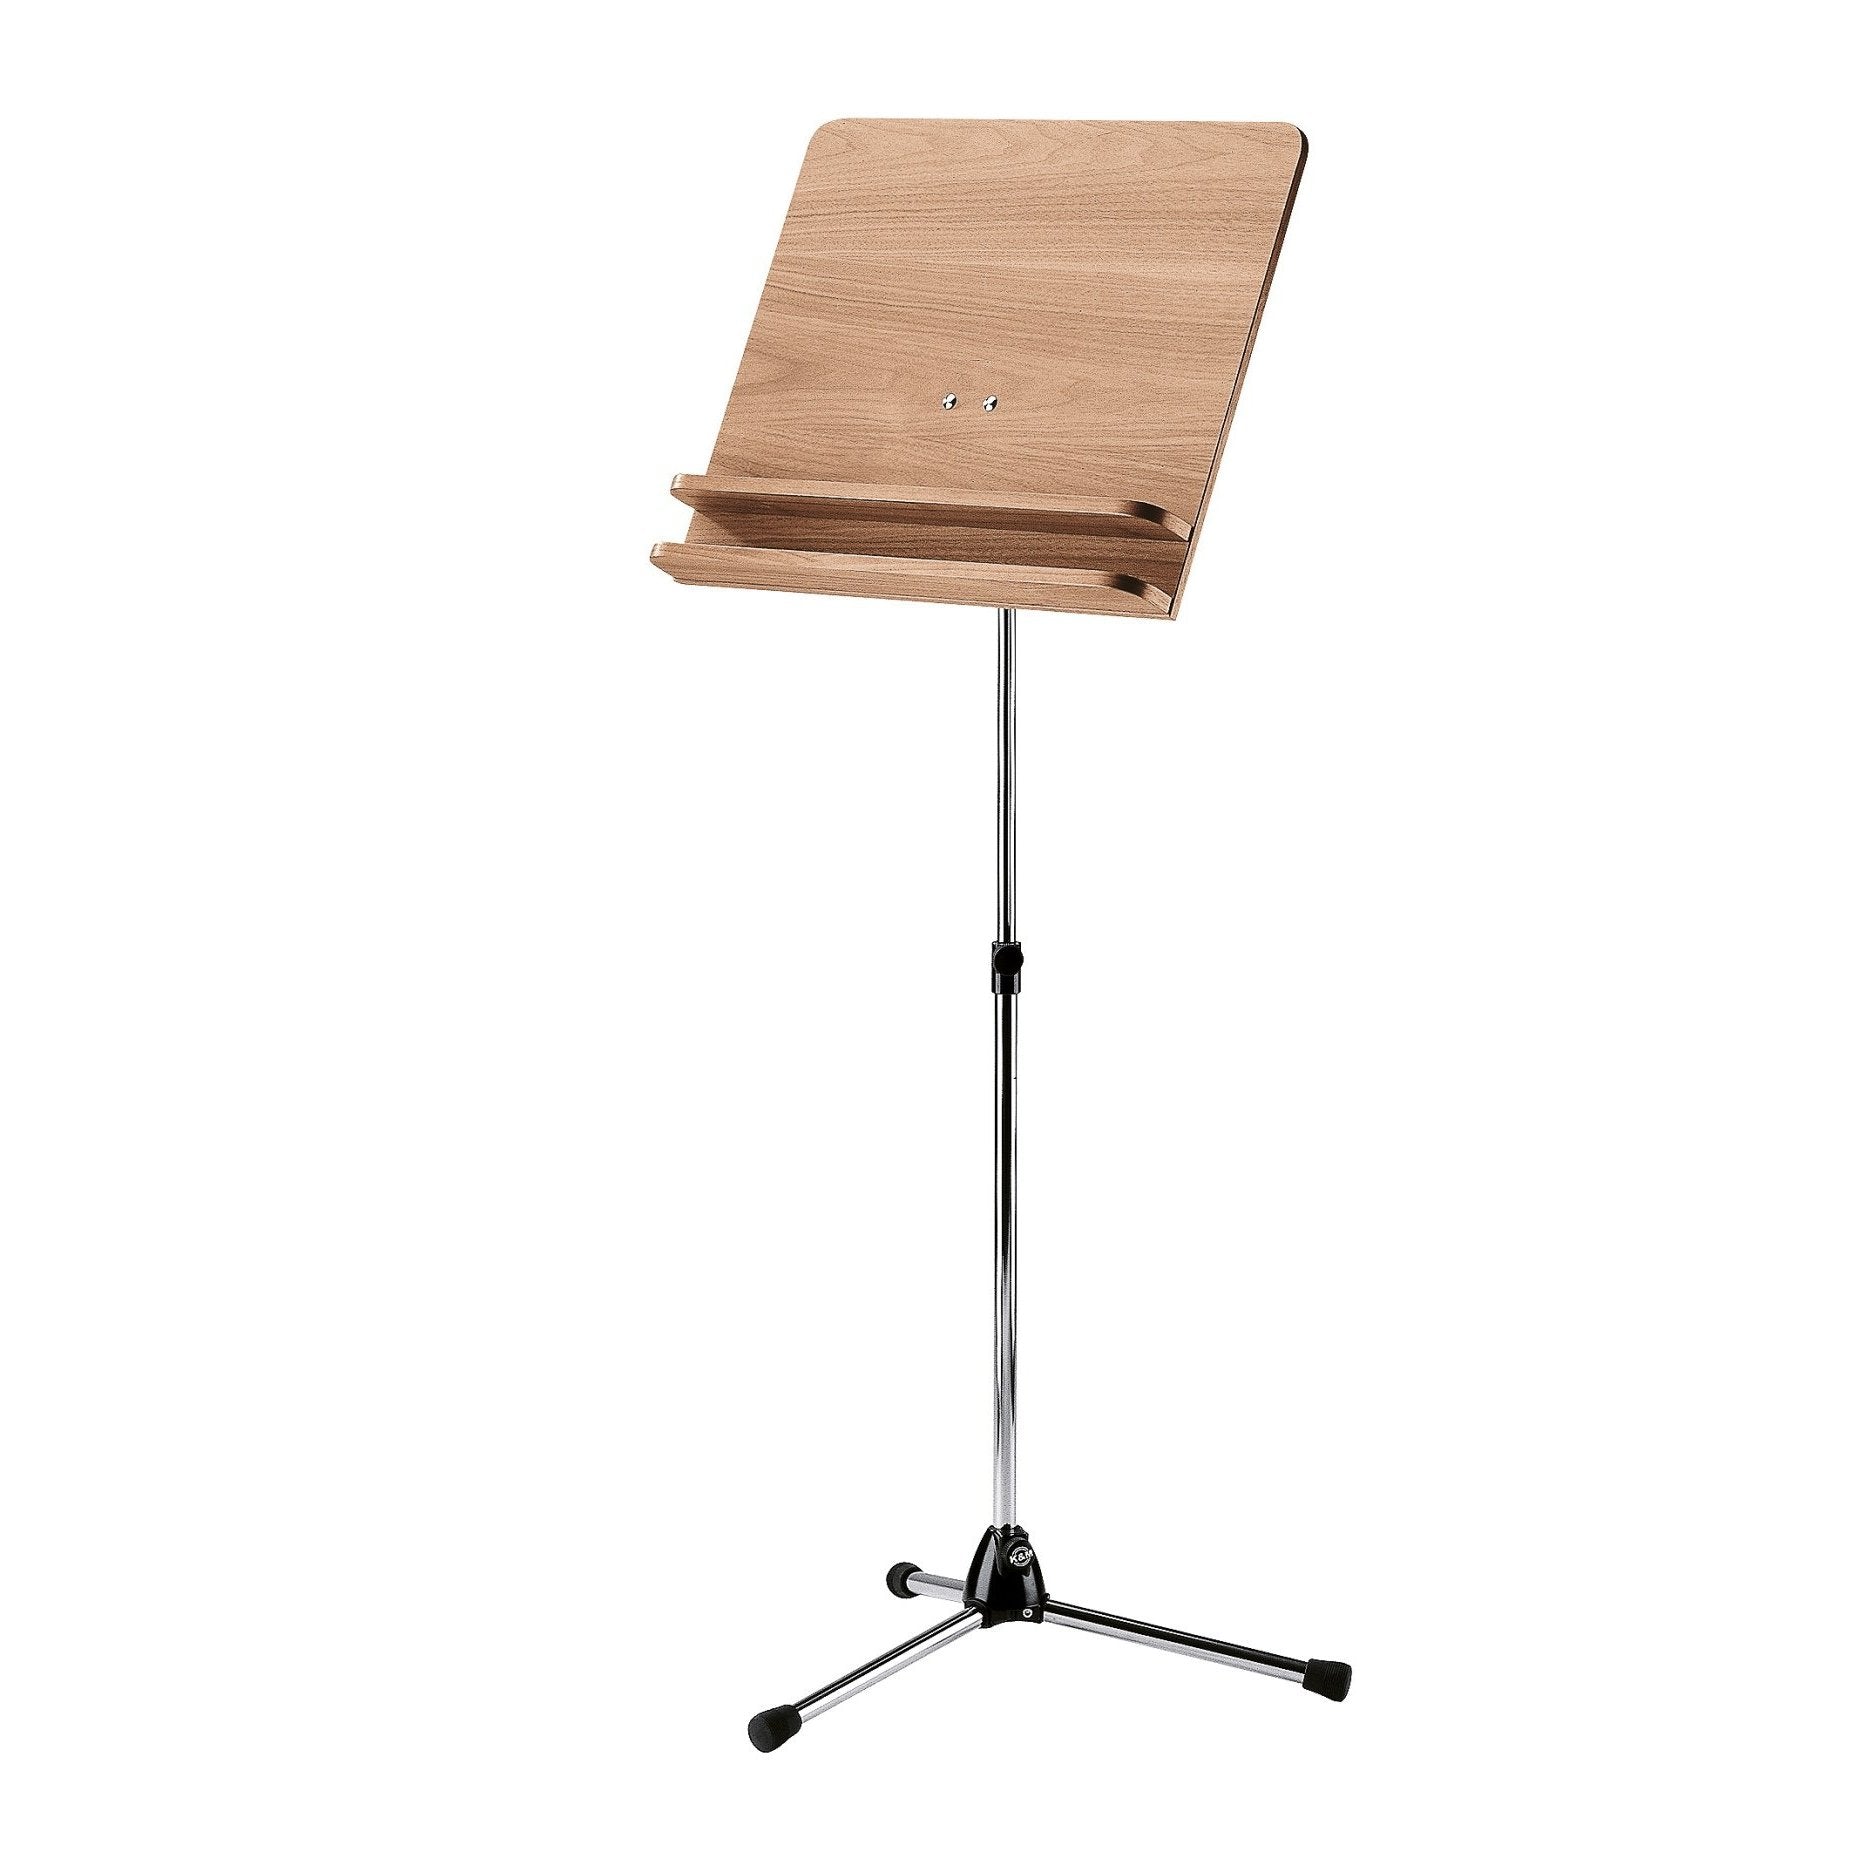 KÃ¶nig & Meyer - 118/3 Topline Orchestra Music Stands-Music Stand-KÃ¶nig & Meyer-Chrome Stand with Walnut Wooden Desk-Music Elements